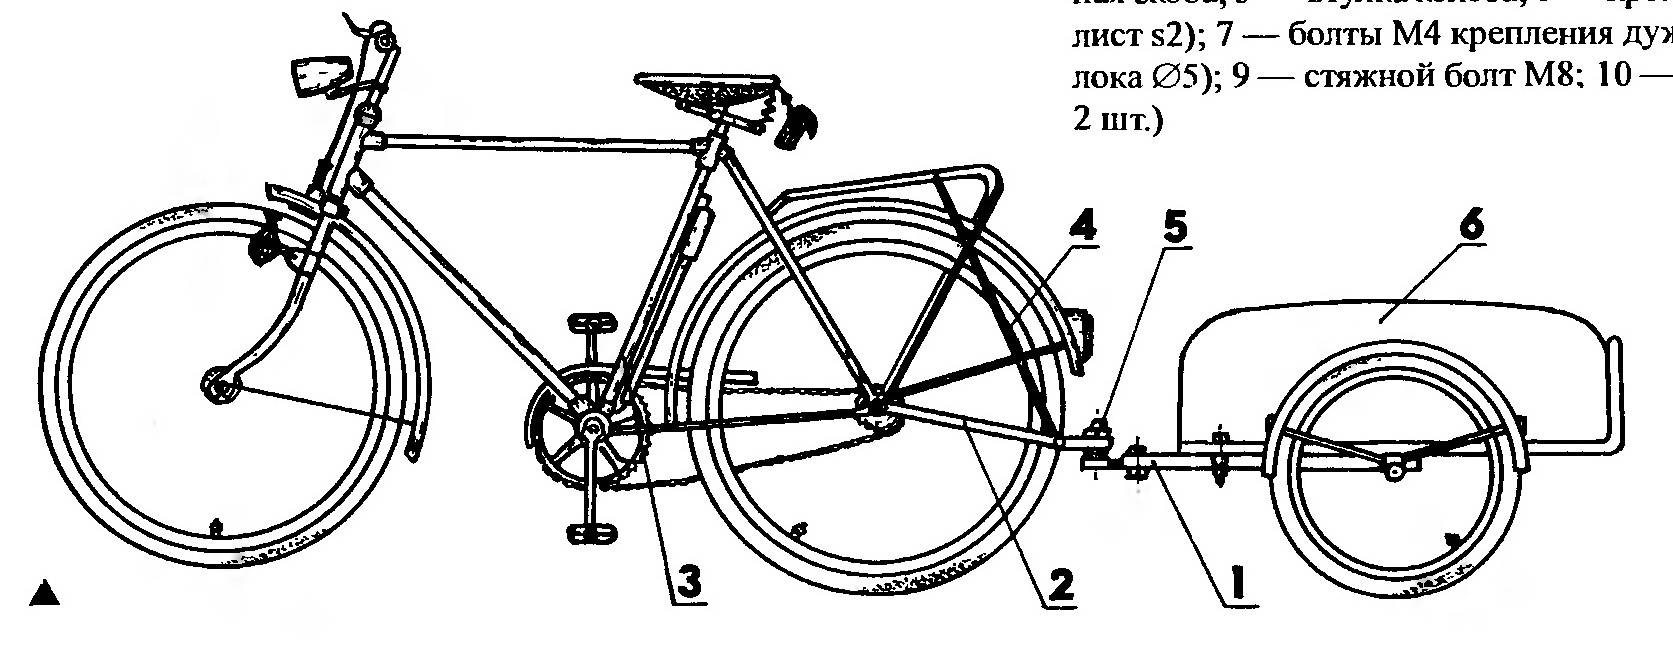 Изготовление прицепа на велосипед своими руками